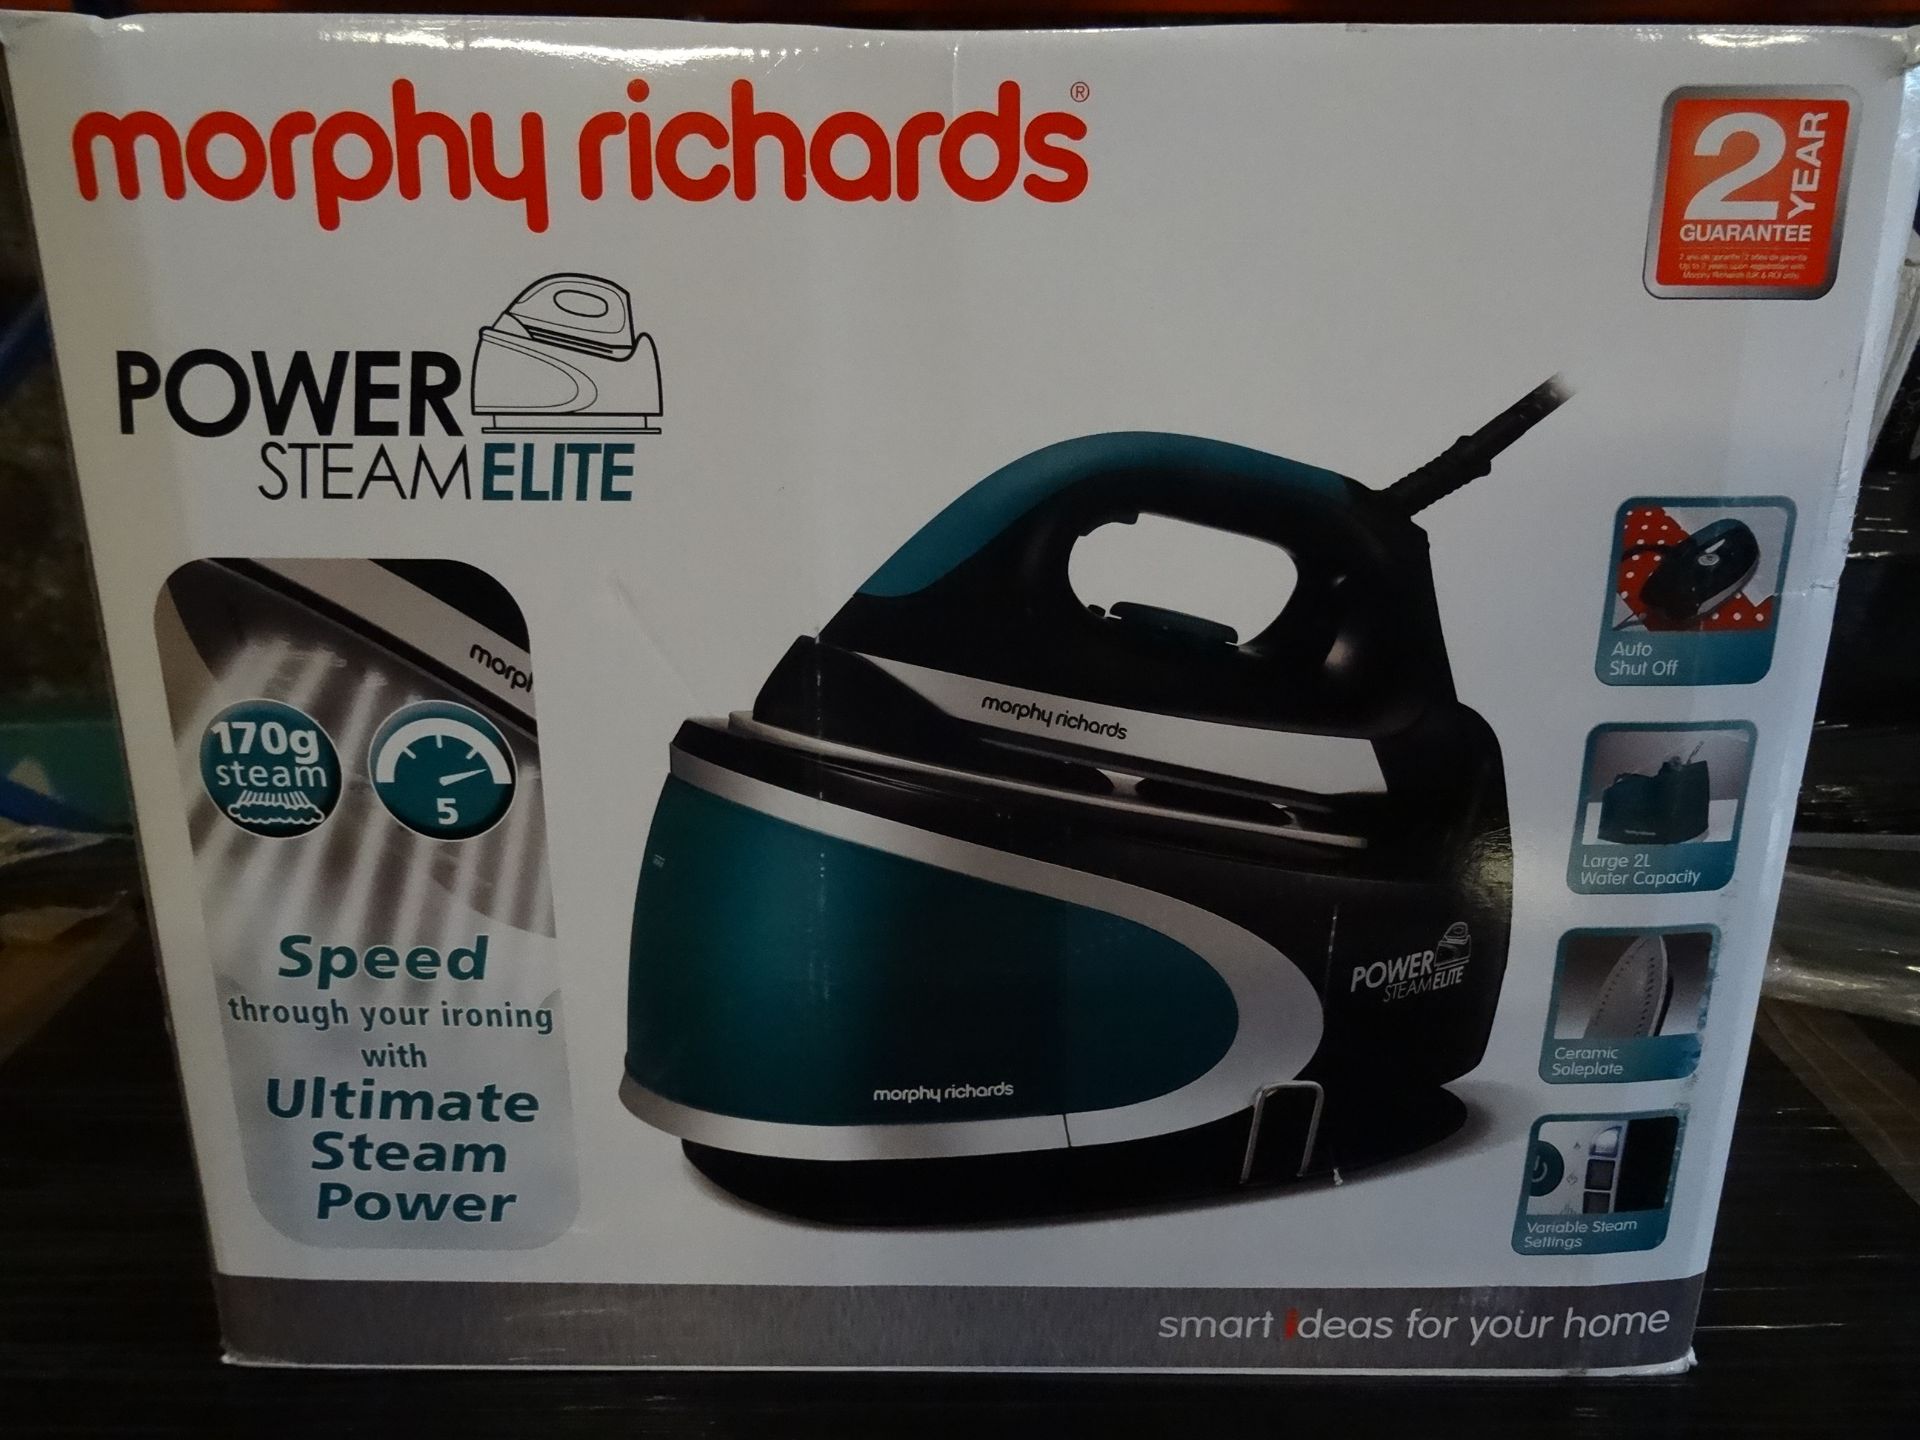 1 x Morphy Richards Power Steam Elite Steam Generating Iron. 170G Steam, Speed through ironing